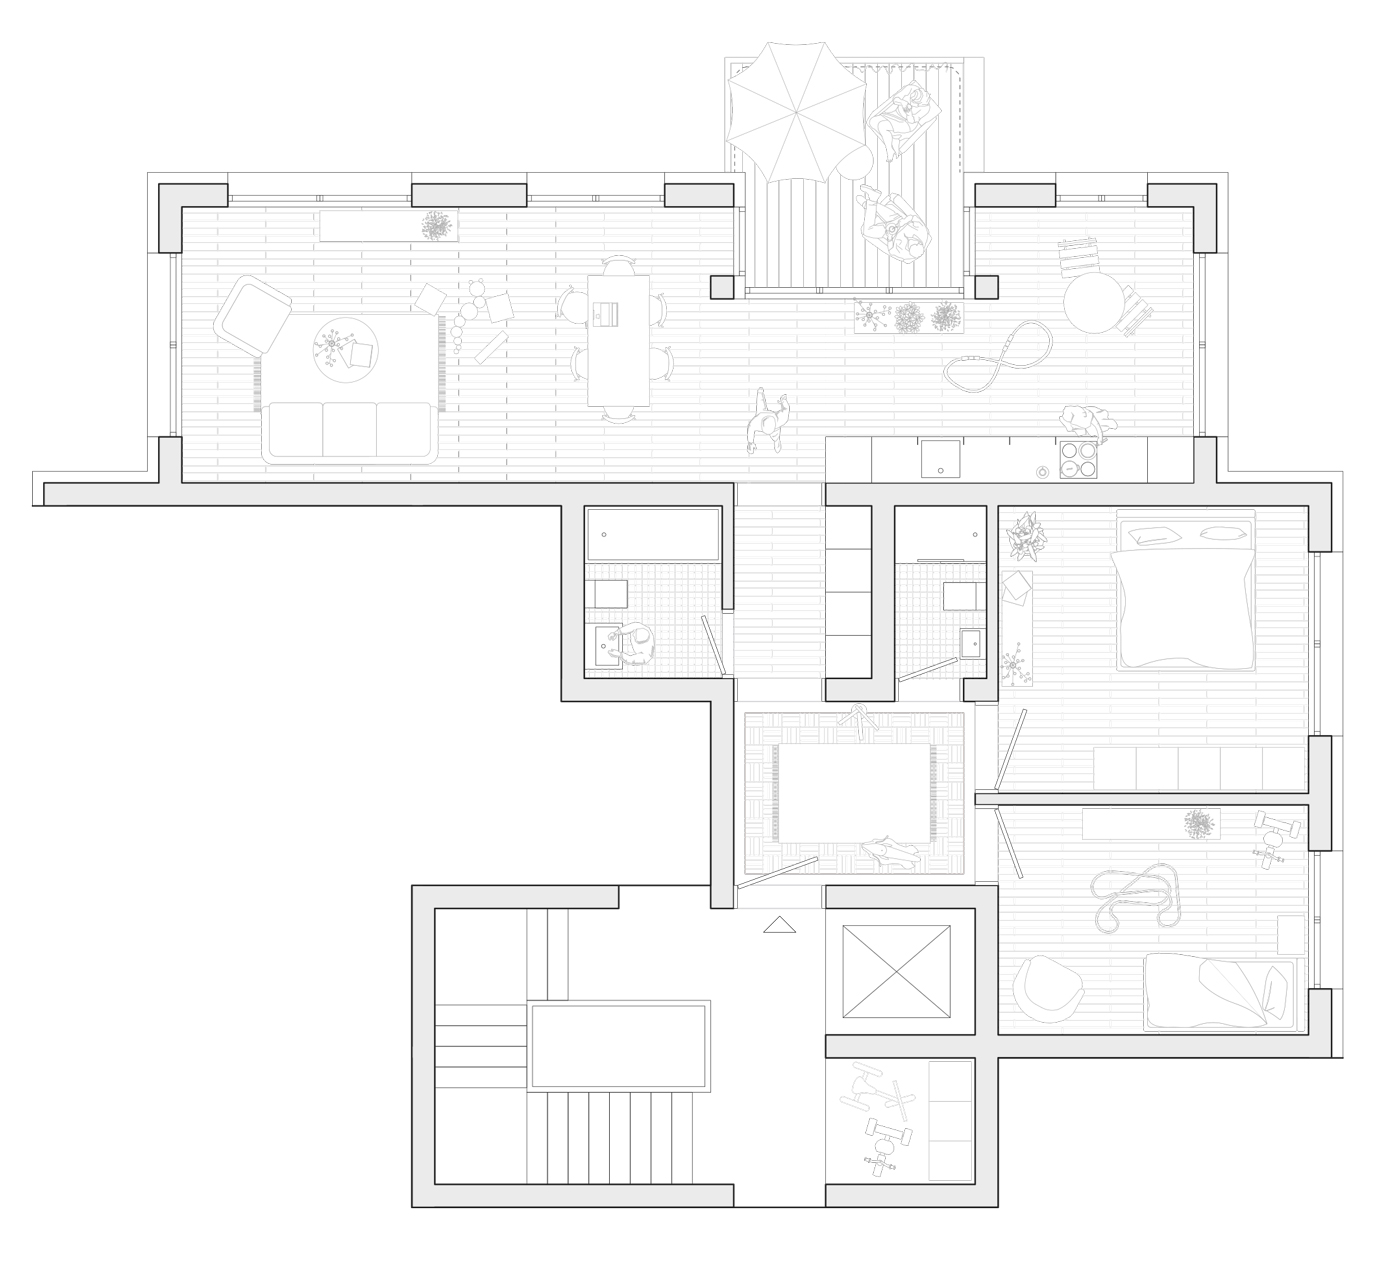 buan architekten – Studienauftrag Meierhöfli Metti – Wohnungsgrundriss 3.5-Zimmer